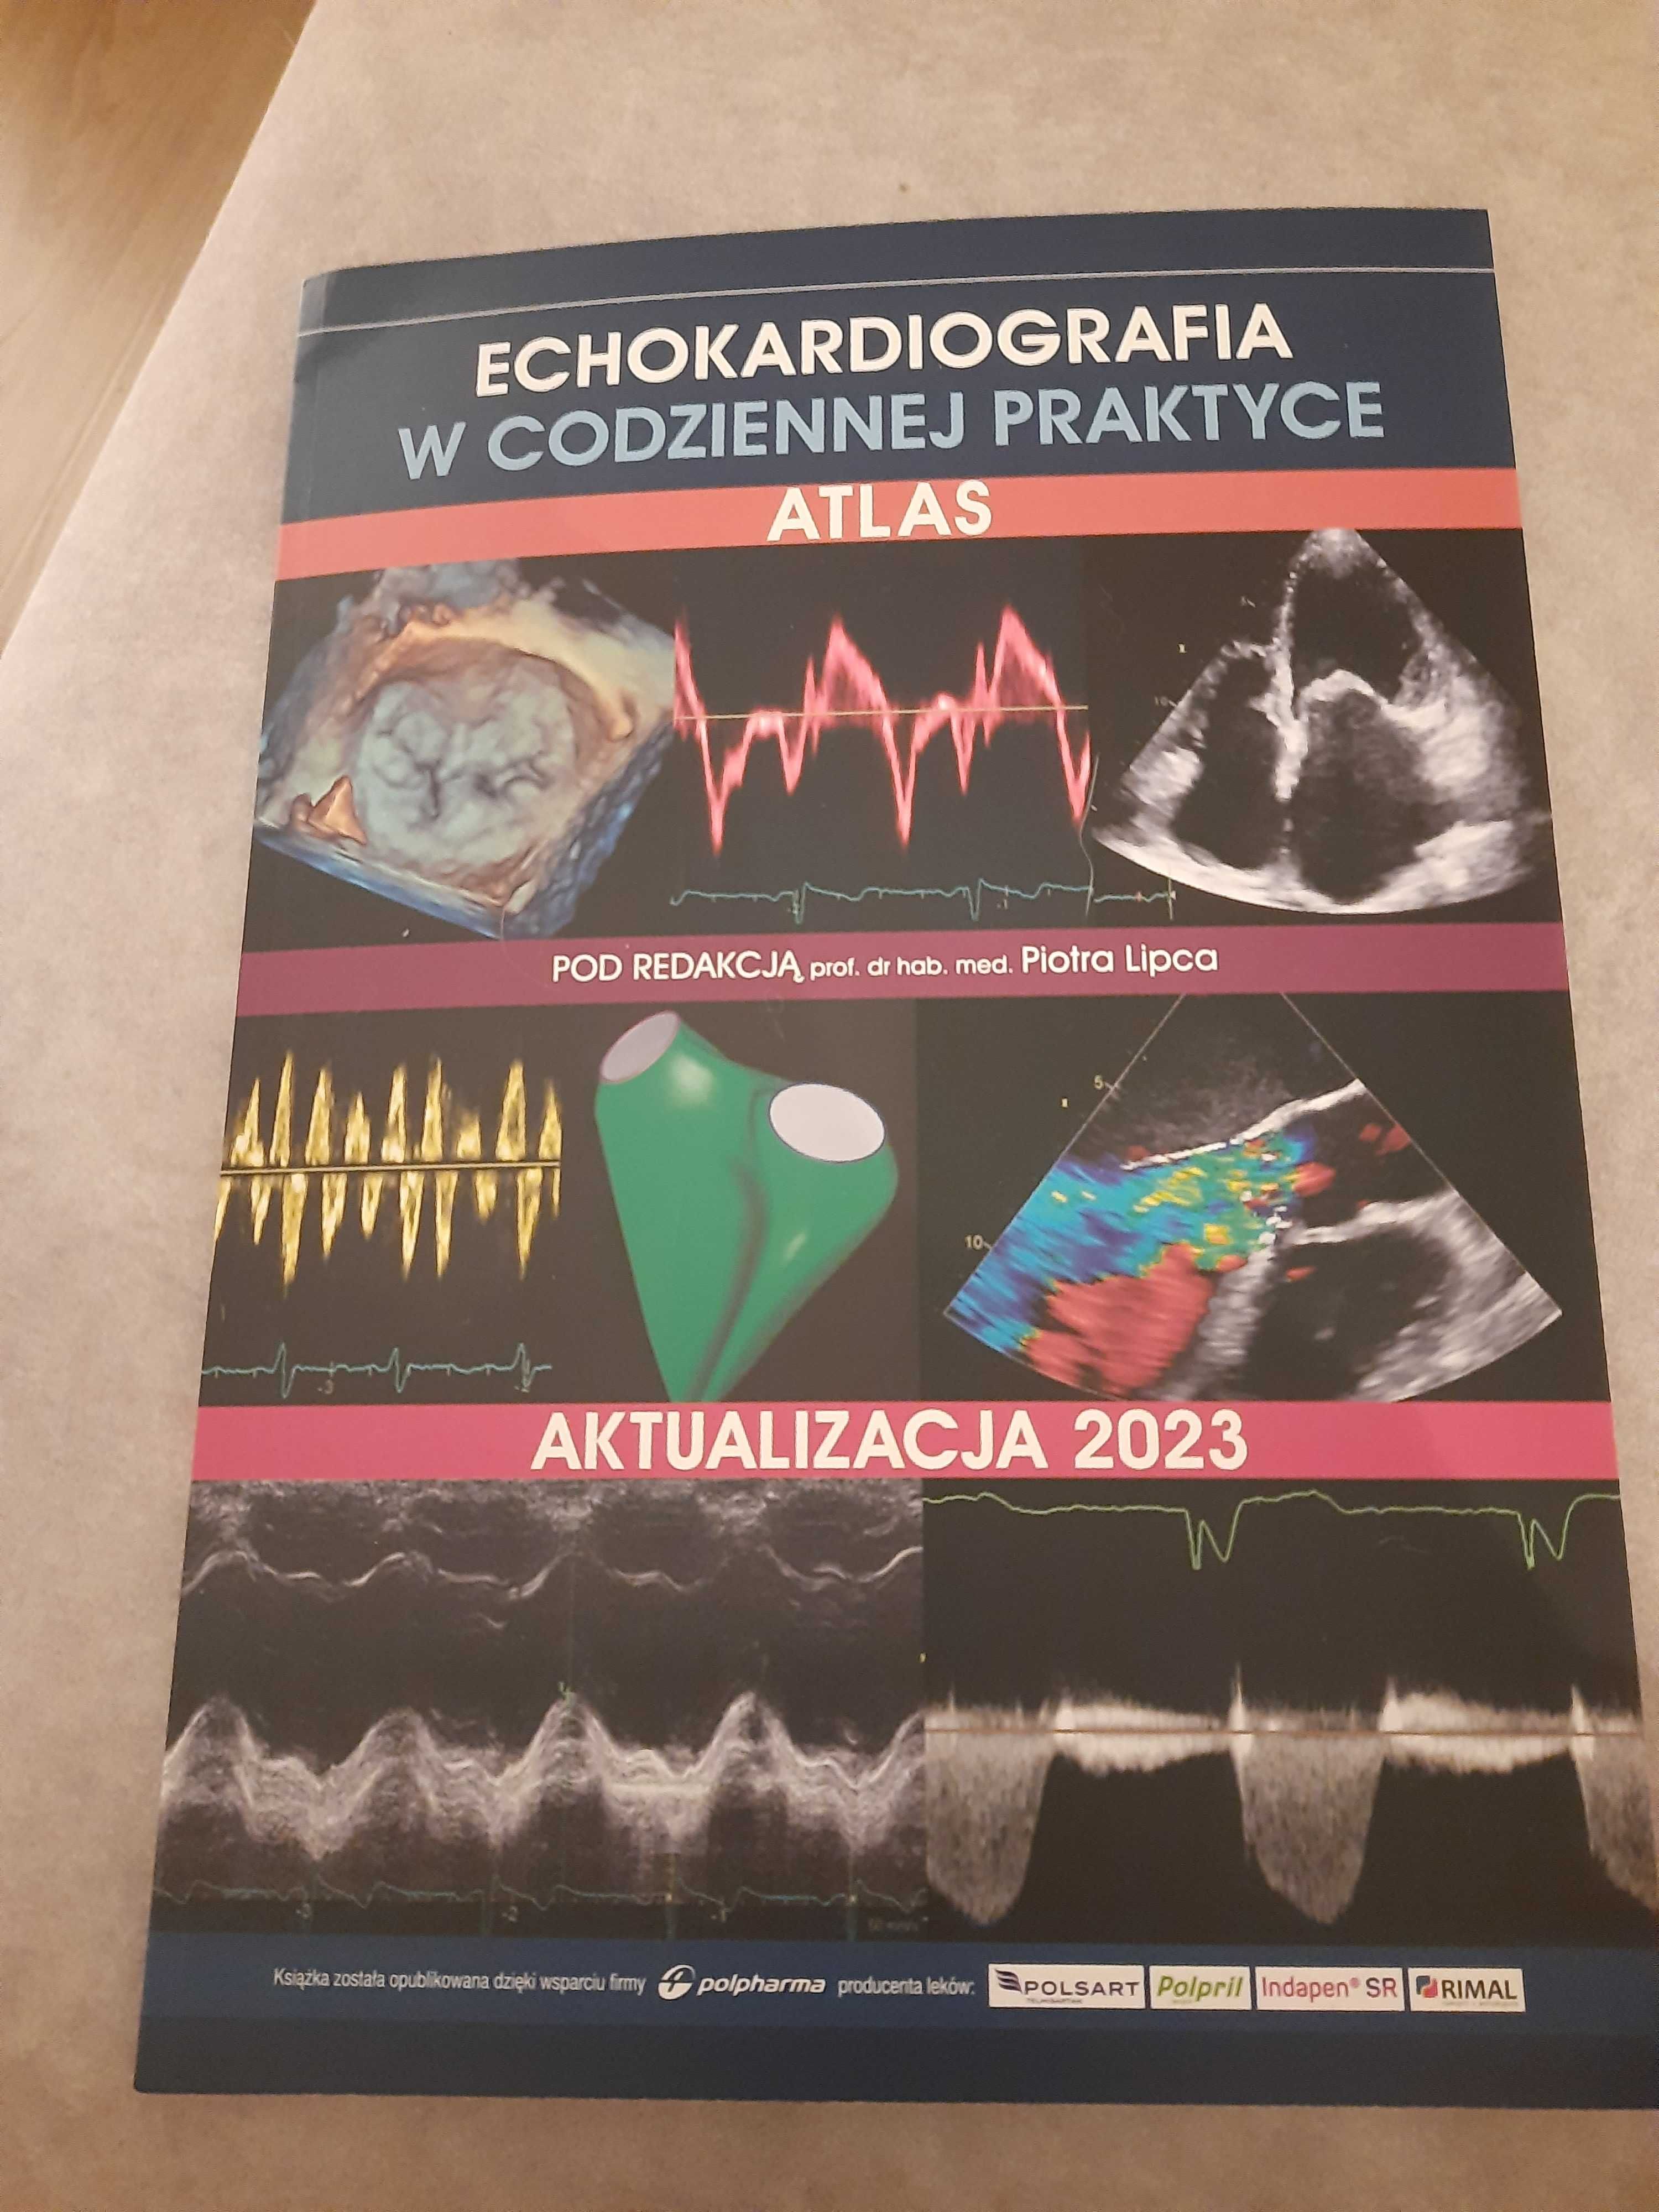 Echokardiografia w codziennej praktyce 2023, Piotr Lipiec